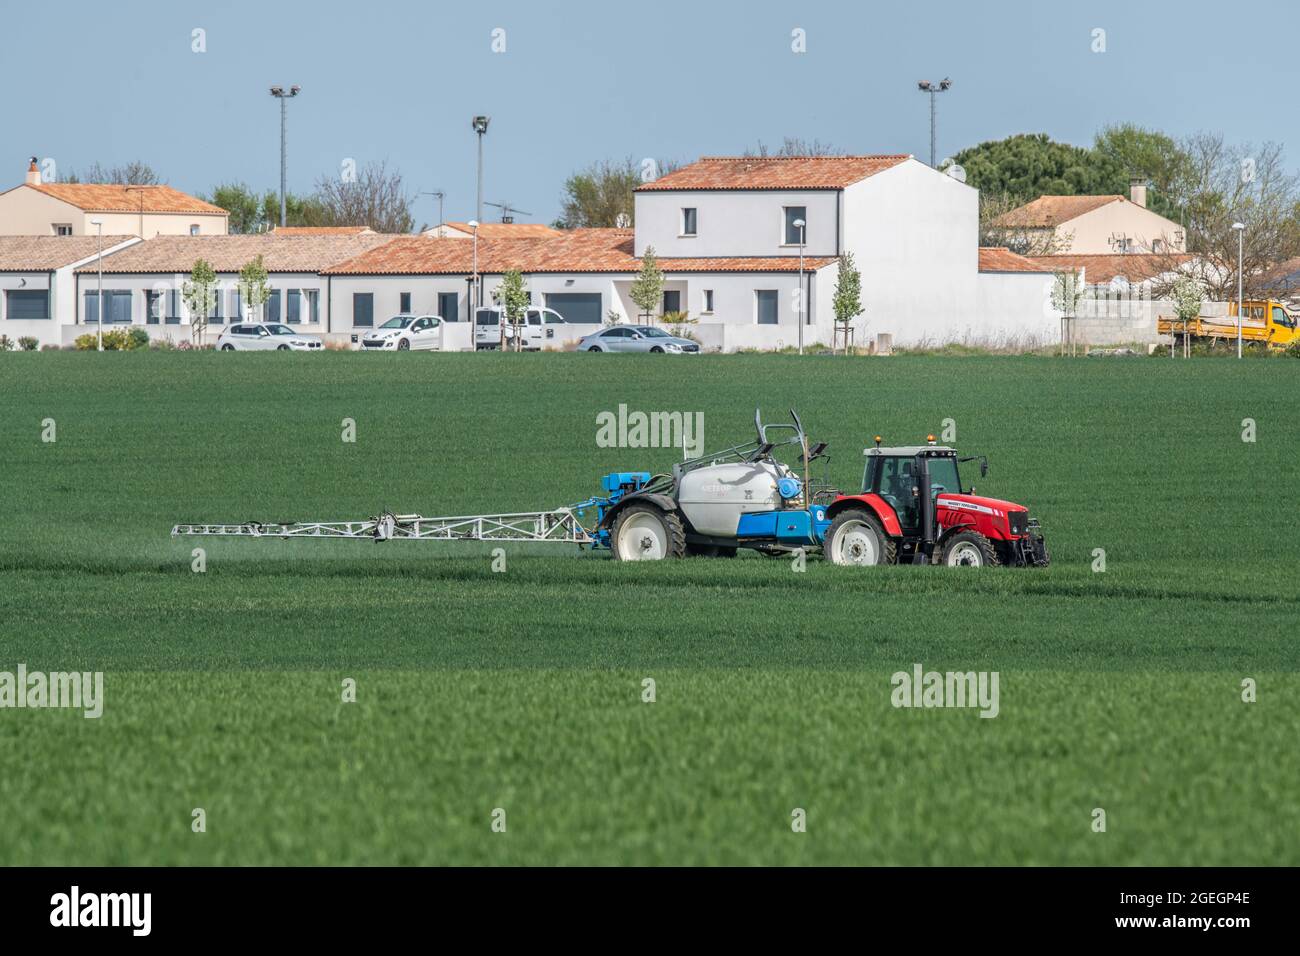 Agriculteur pulvérisant des pesticides sur un champ de blé près d'une propriété immobilière à Saint Rogatien (sud-ouest de la France) Banque D'Images